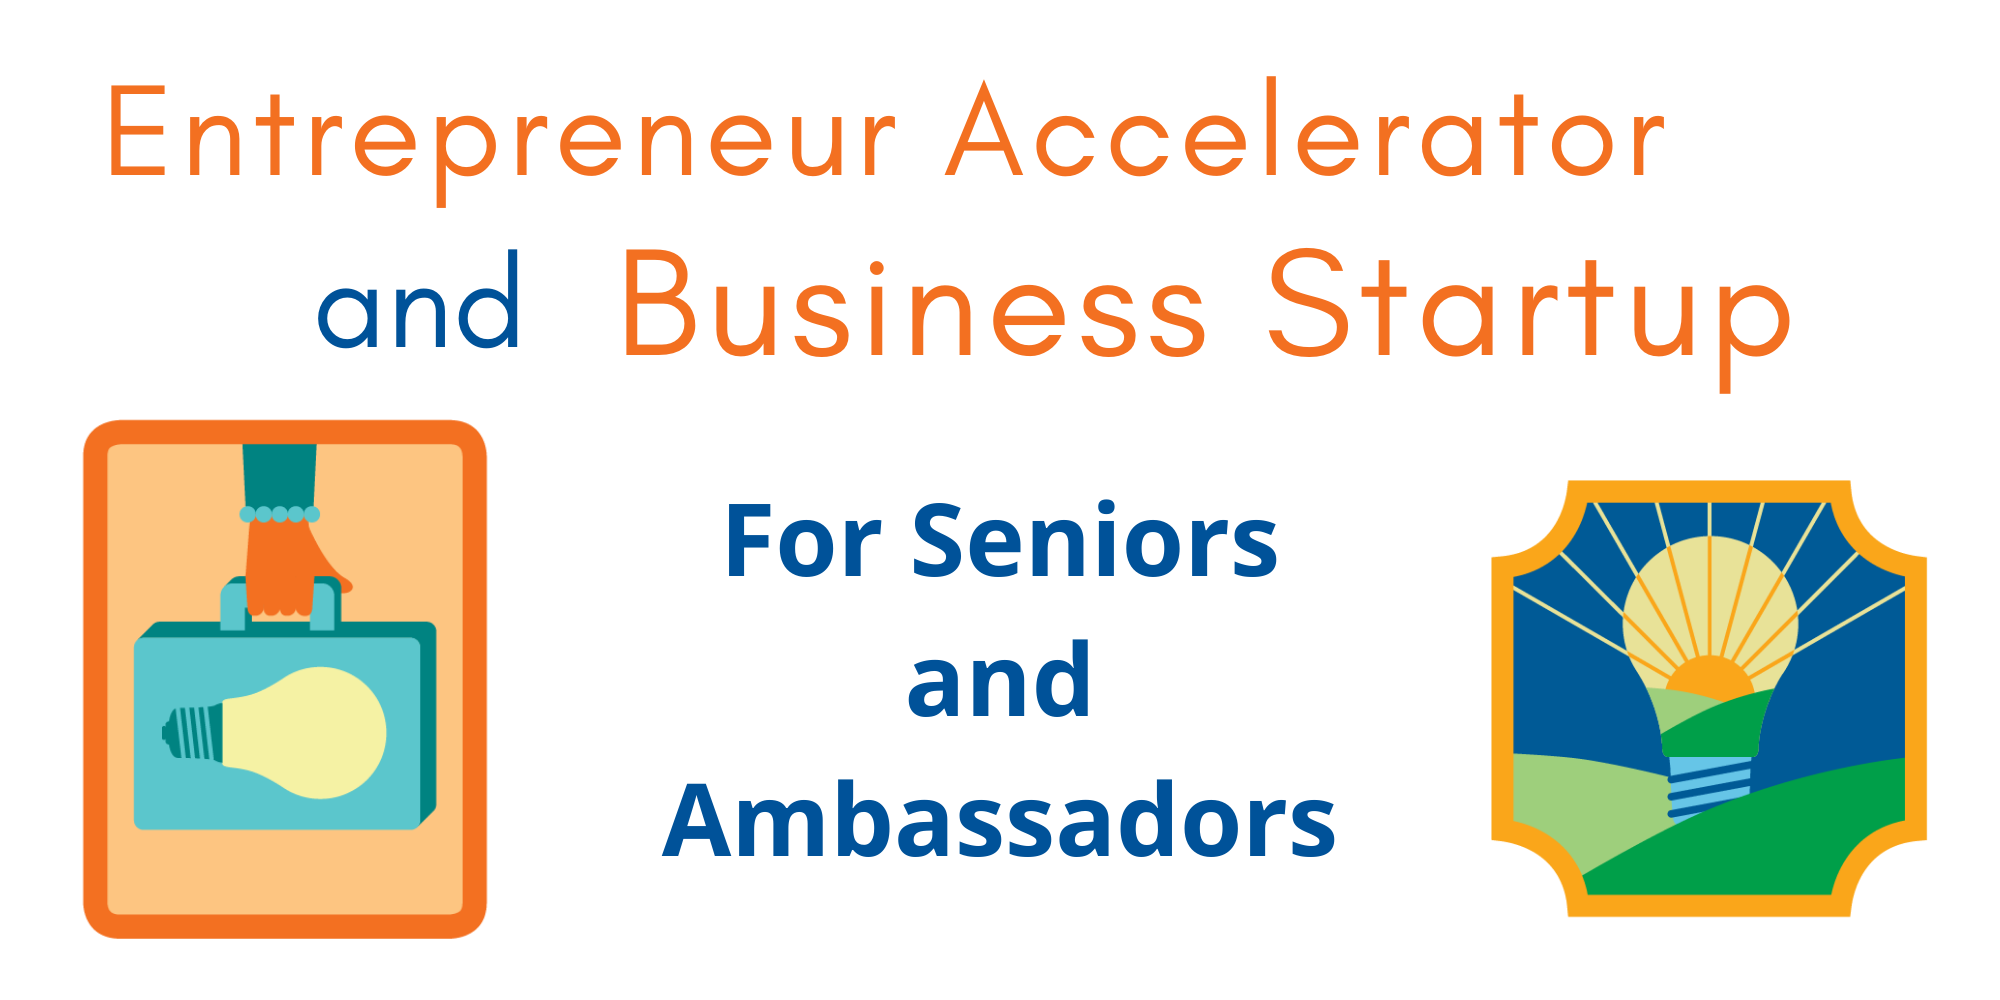 Business Startup-entrepreneur accelerator.png